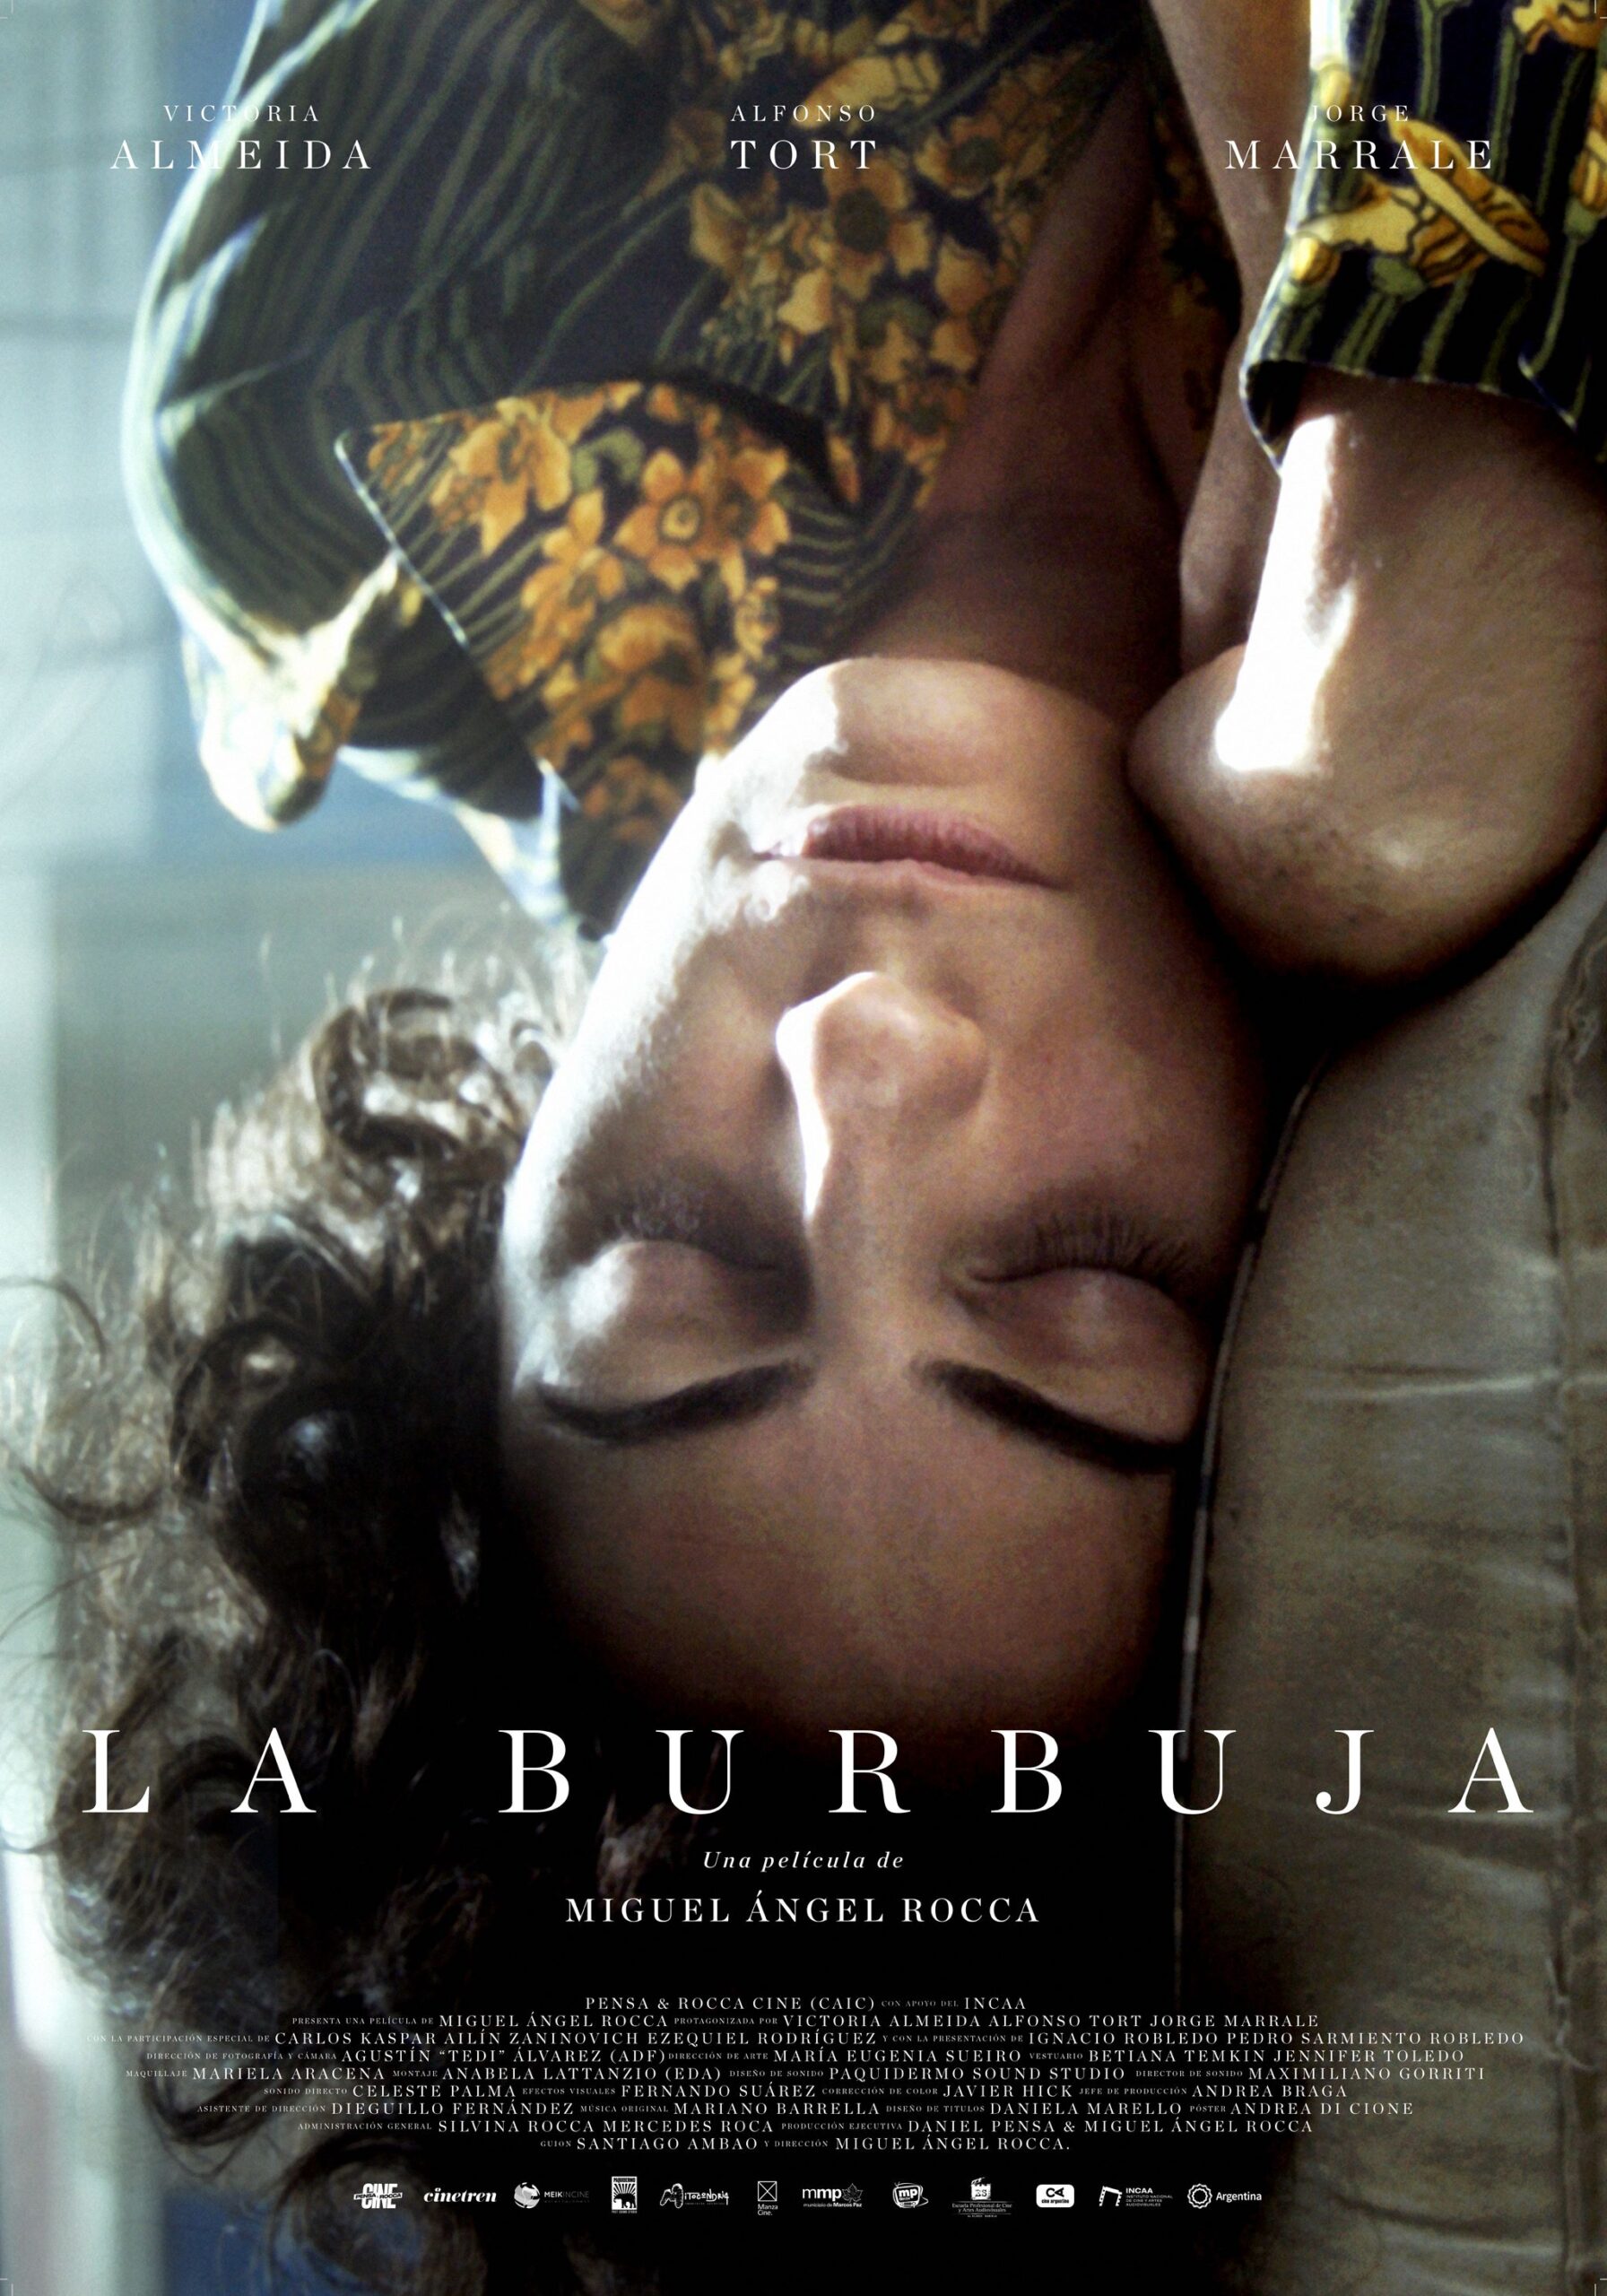 FILME «LA BURBUJA», CON VICTORIA ALMEIDA, ALFONSO TORT Y JORGE MARRALE, SE ESTRENÓ EN SALAS DE TODO EL PAÍS.